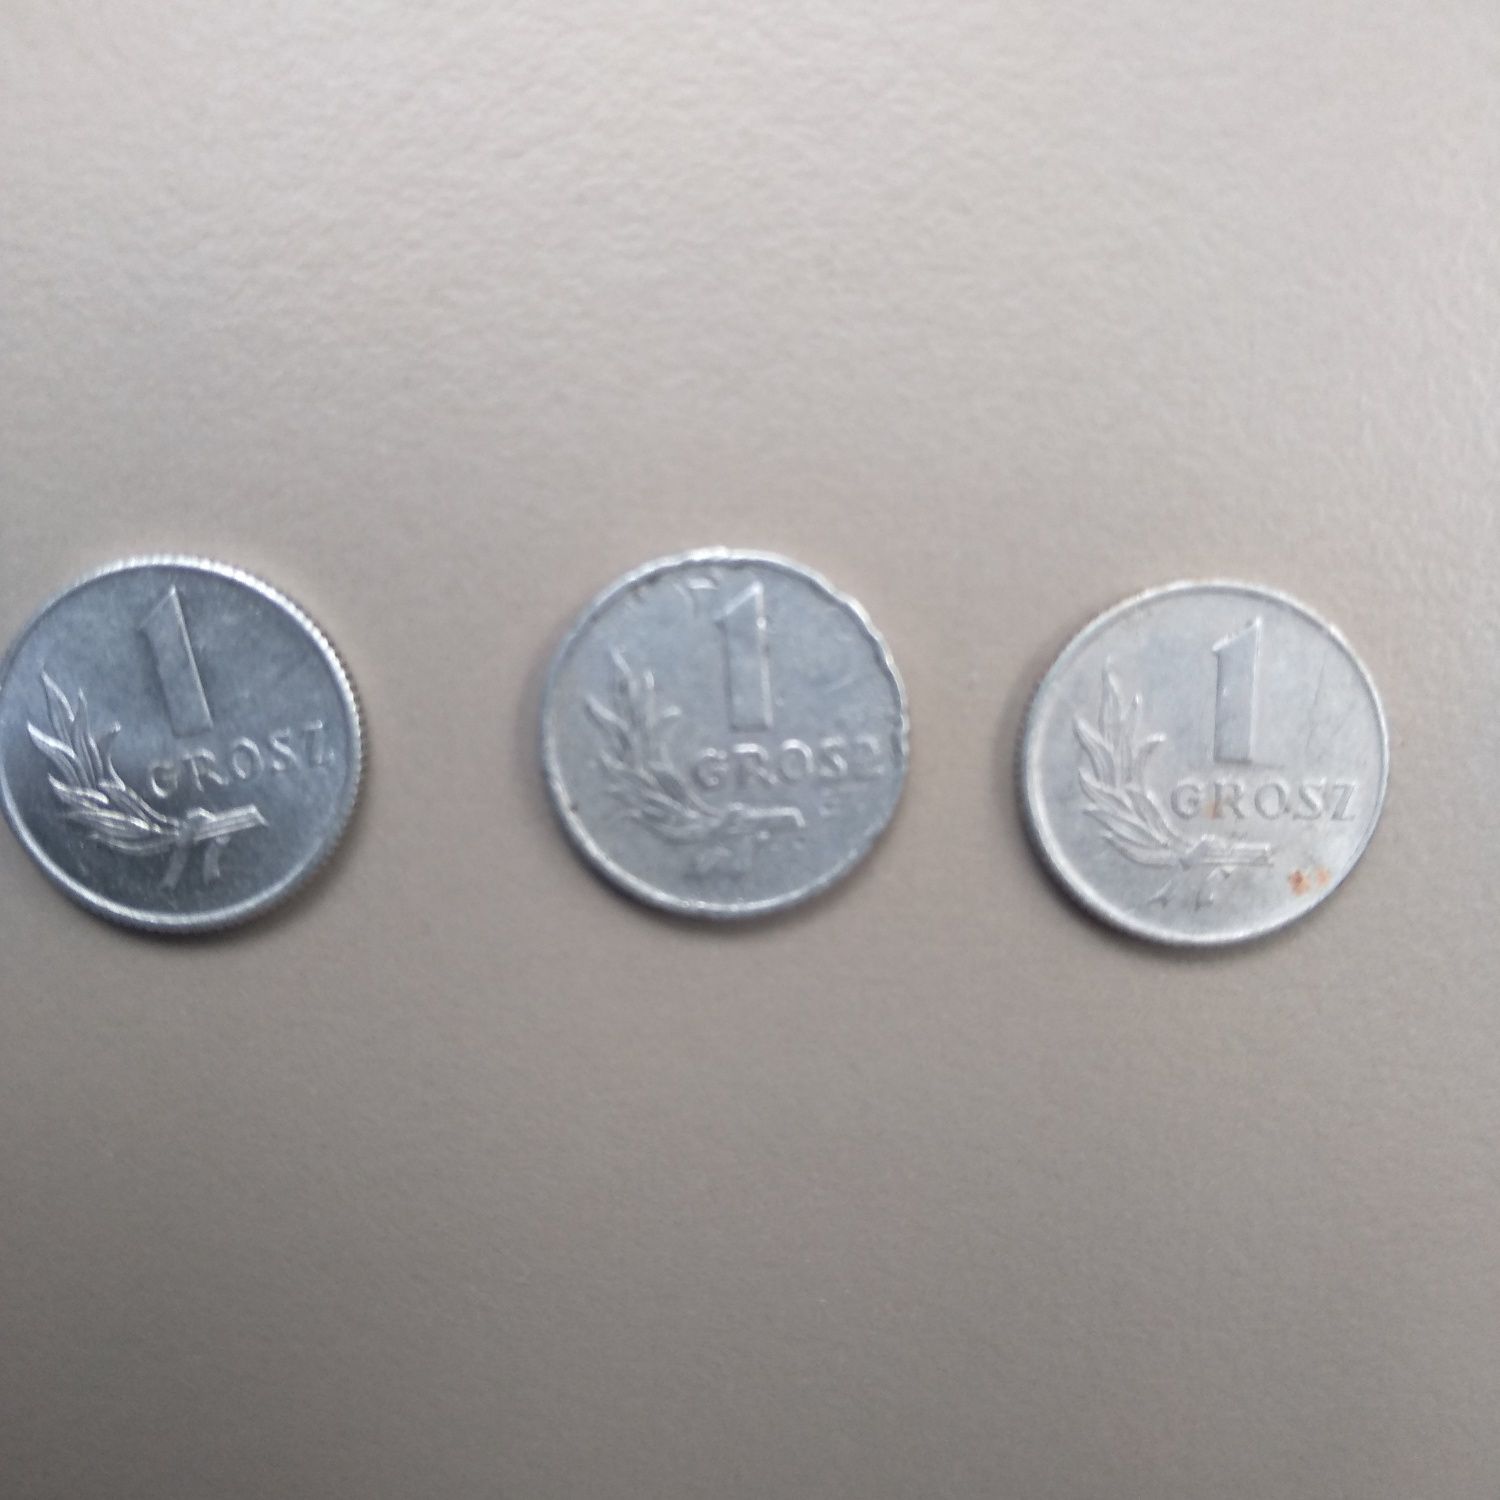 Moneta 1 groszowa z roku 1949